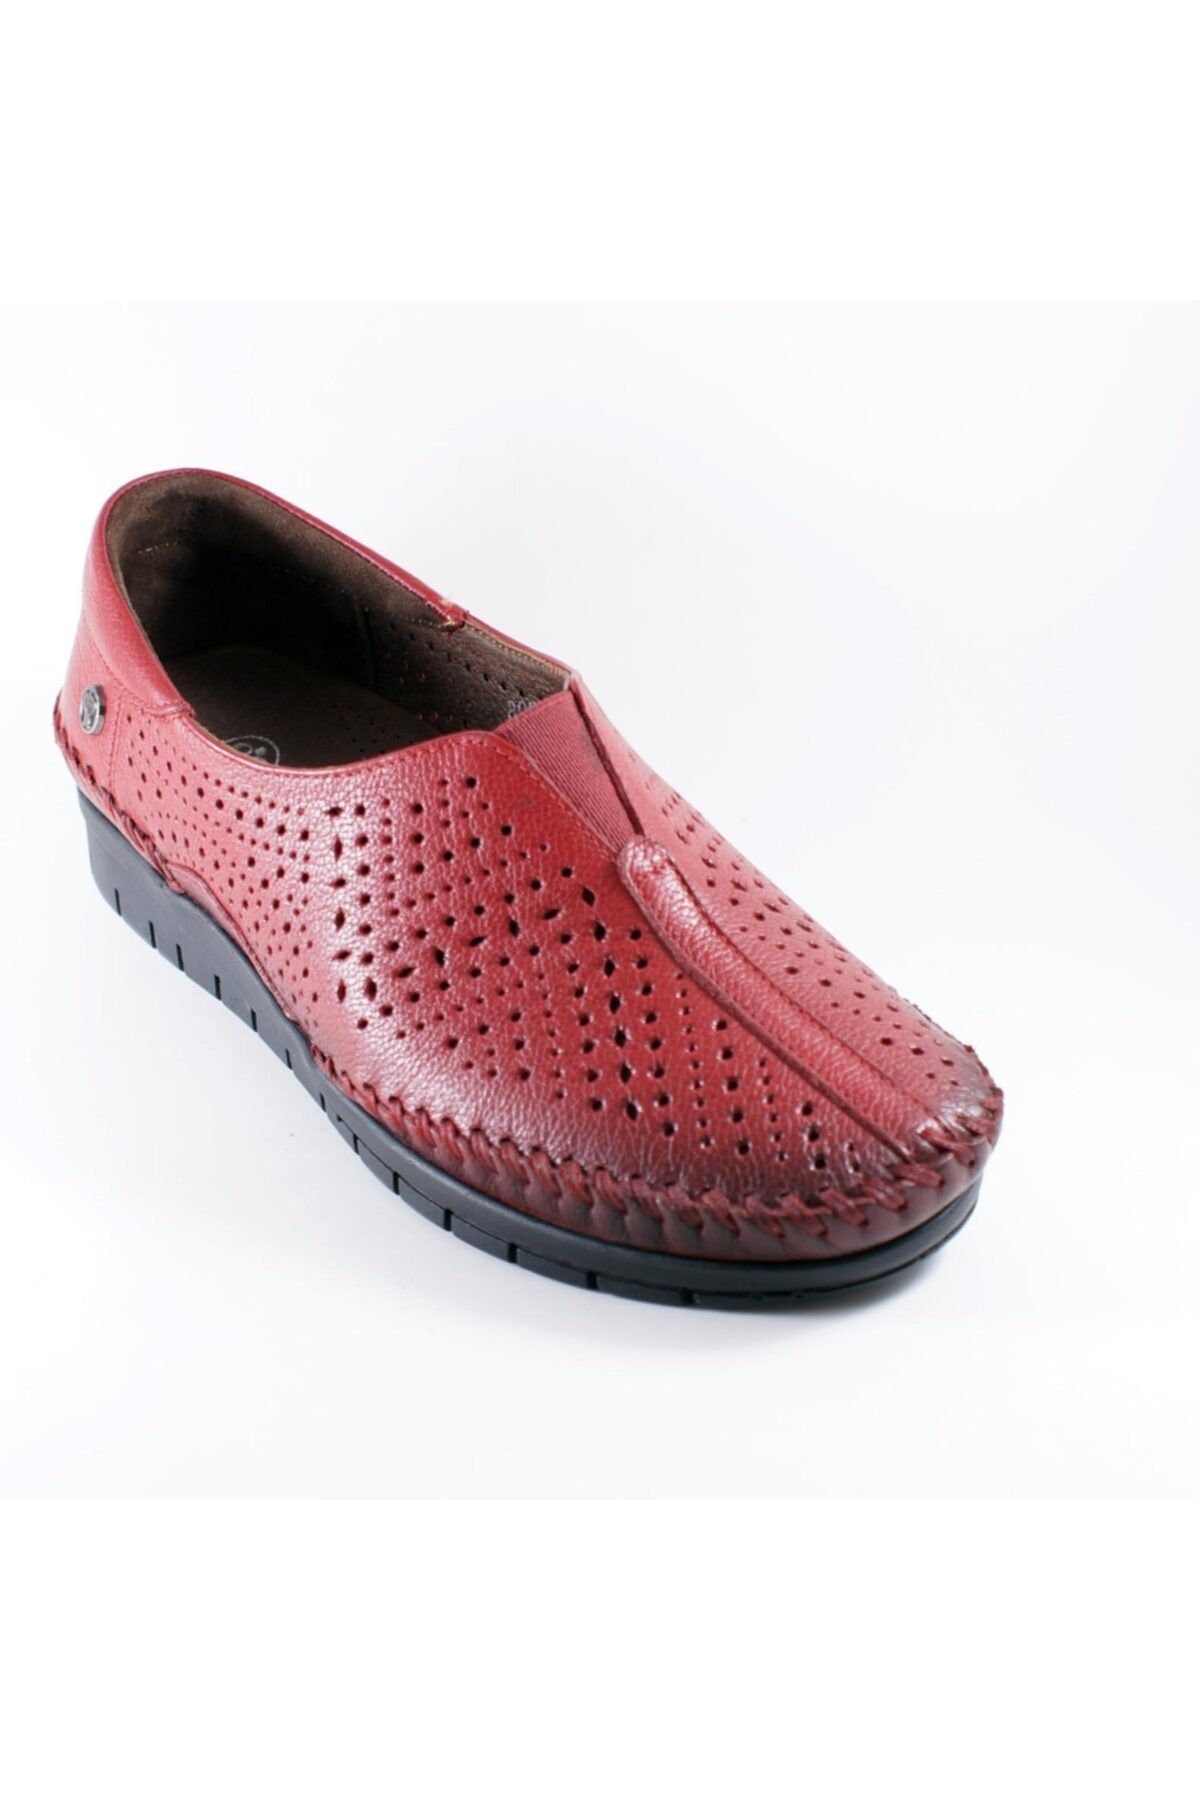 Forelli Kadın Kırmızı Deri Ortopedi Ayakkabı 23409